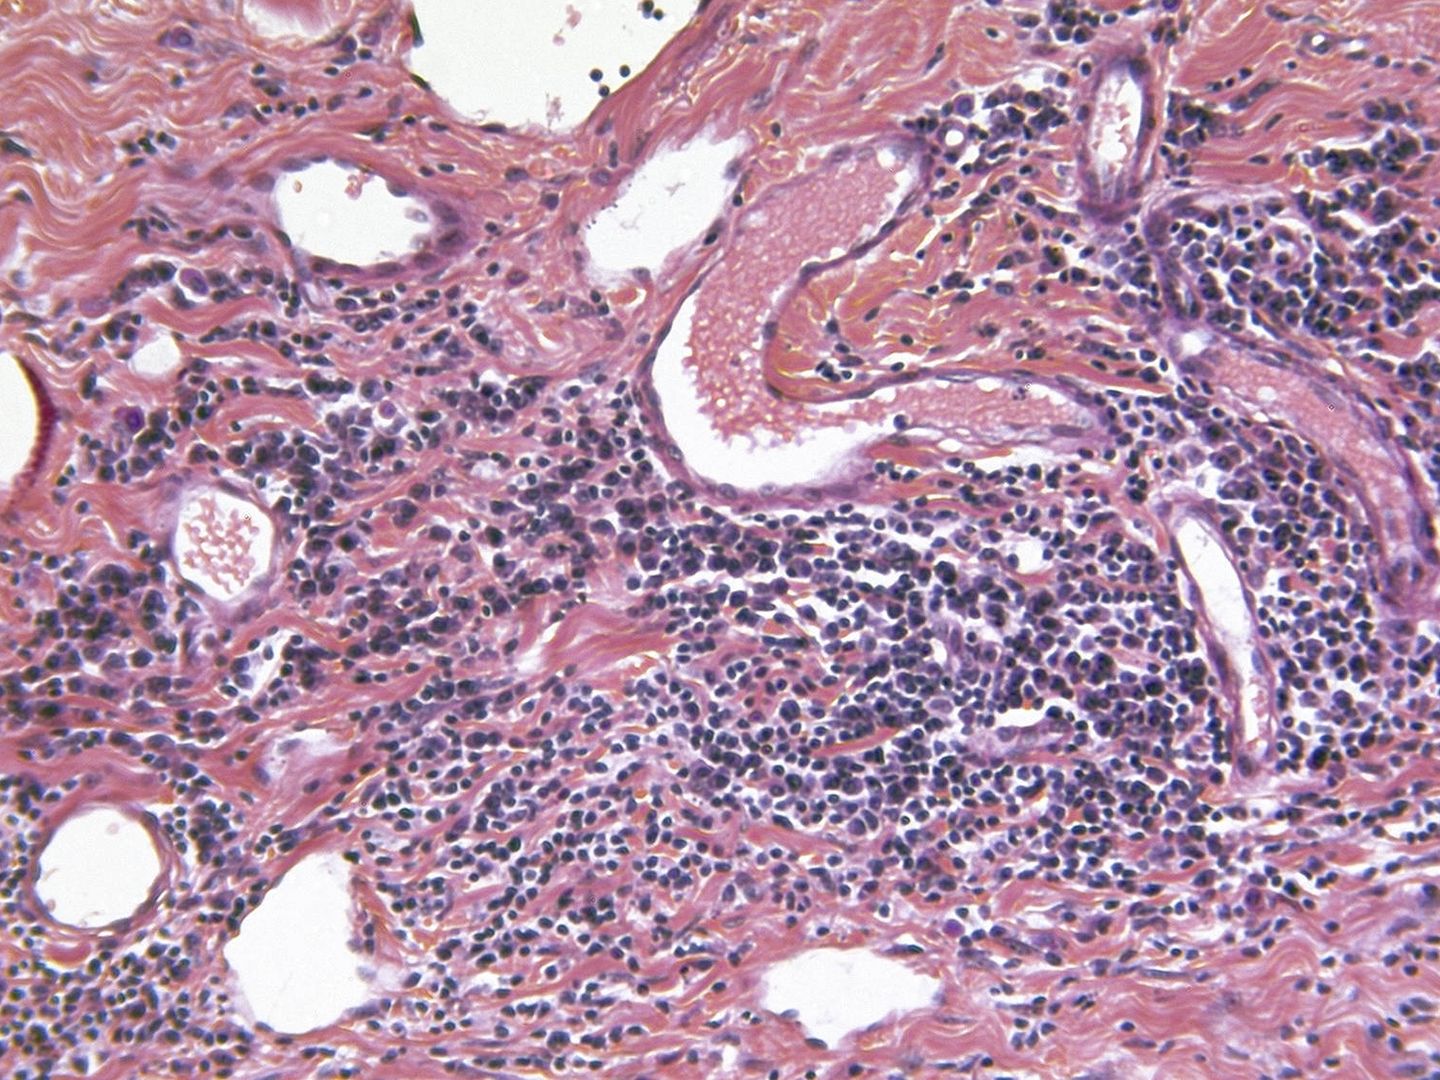 Células epiteliales escamosas en fase metastásicas. (iStock)